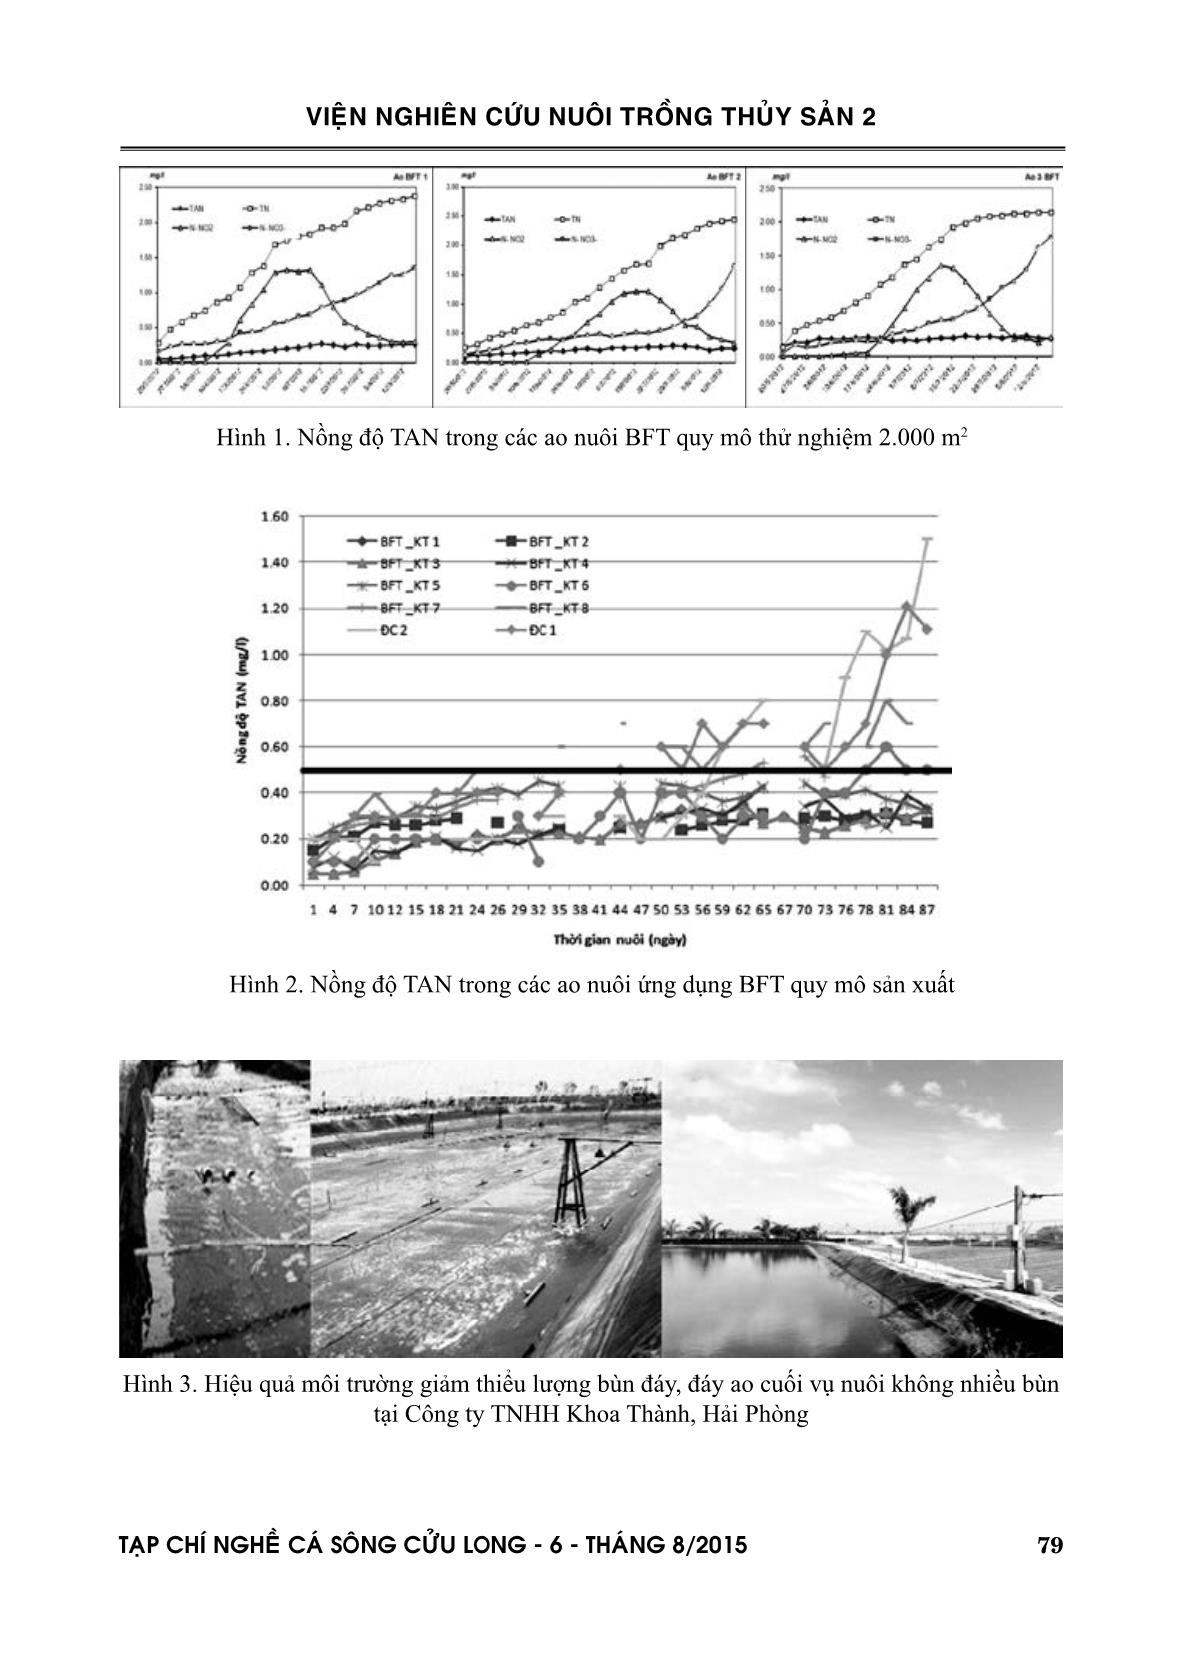 Ứng dụng công nghệ biofloc nuôi thâm canh tôm he chân trắng (Litopenaeus vannamei) vào phát triển sản xuất trang 5